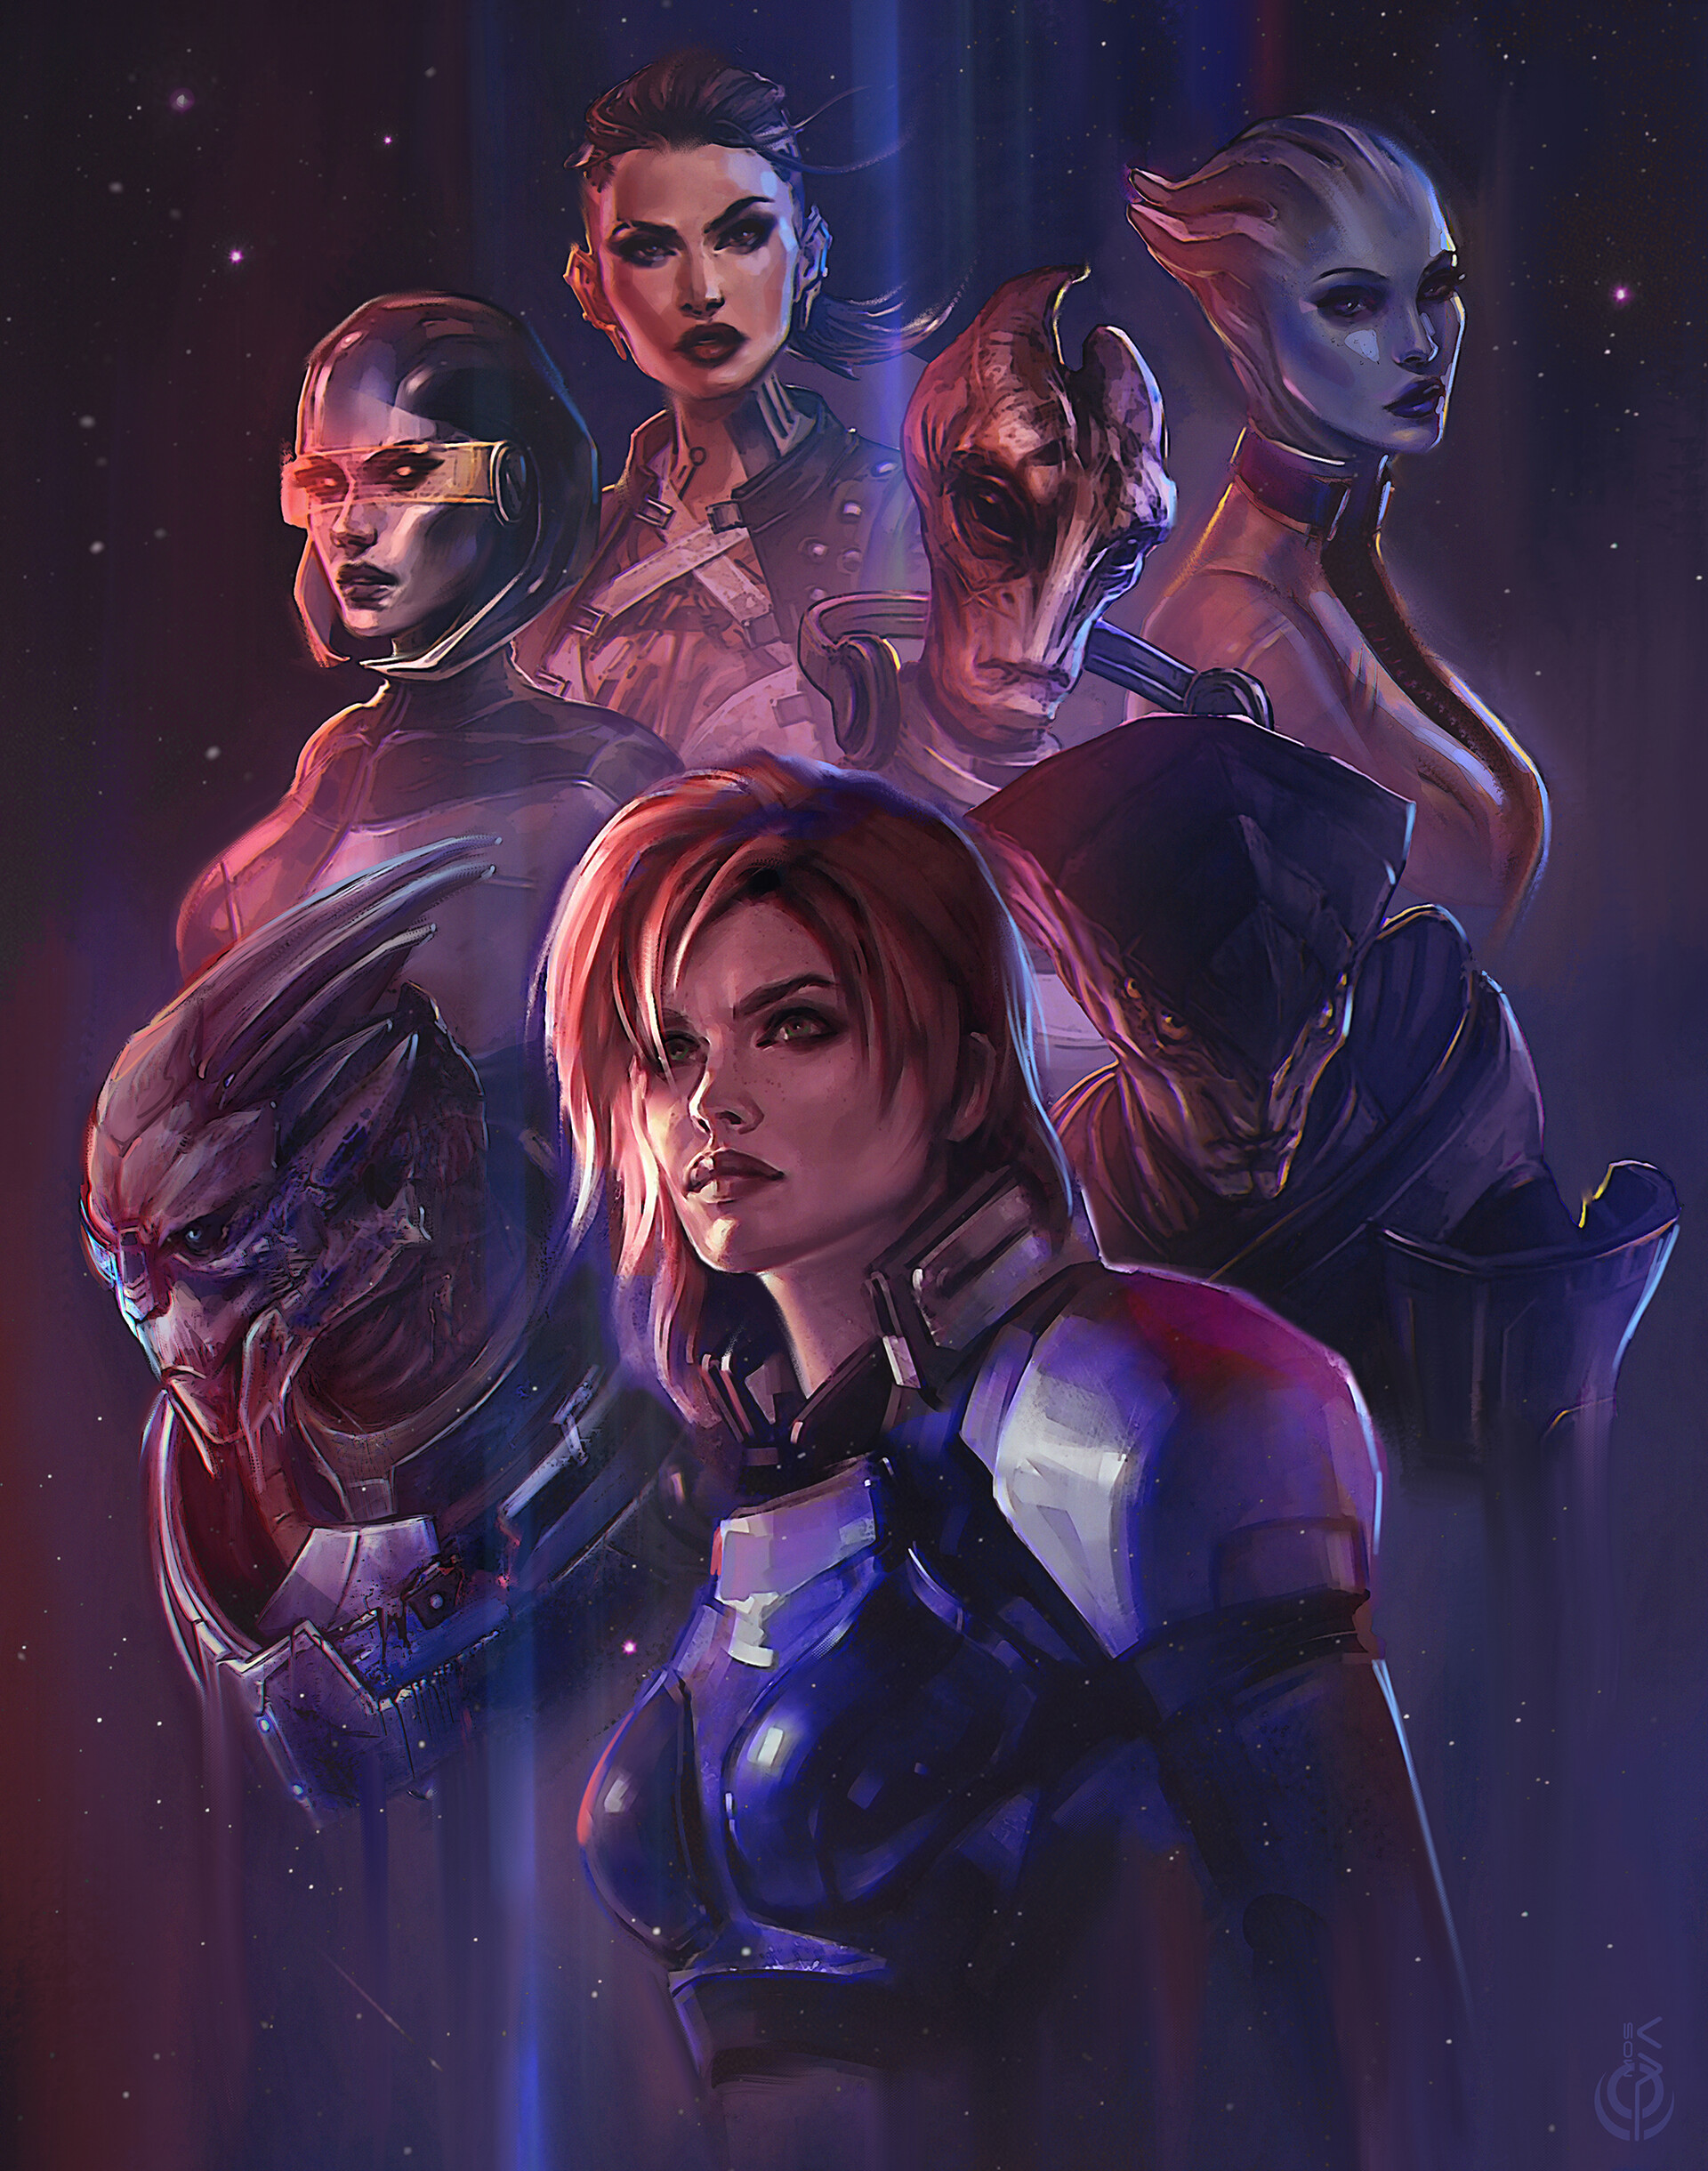 ArtStation - Mass Effect fan art